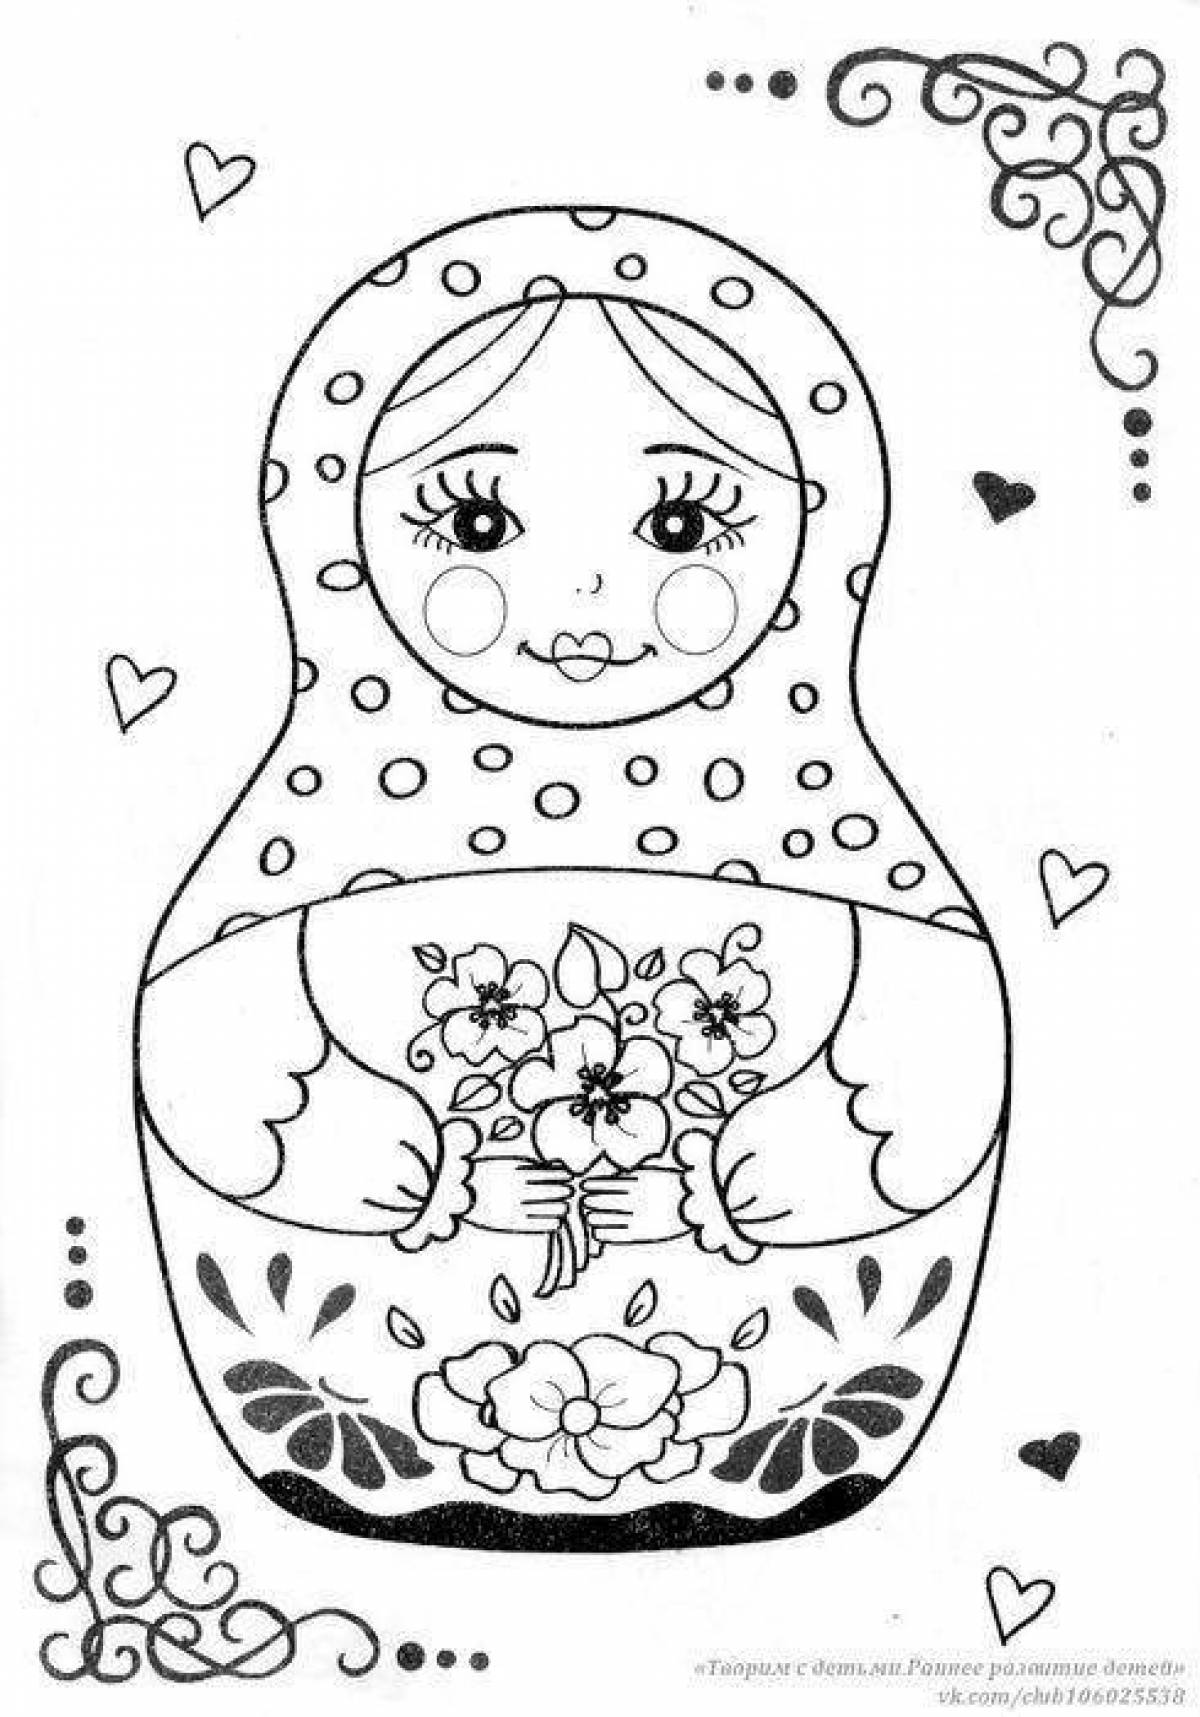 Adorable pre-k matryoshka coloring book